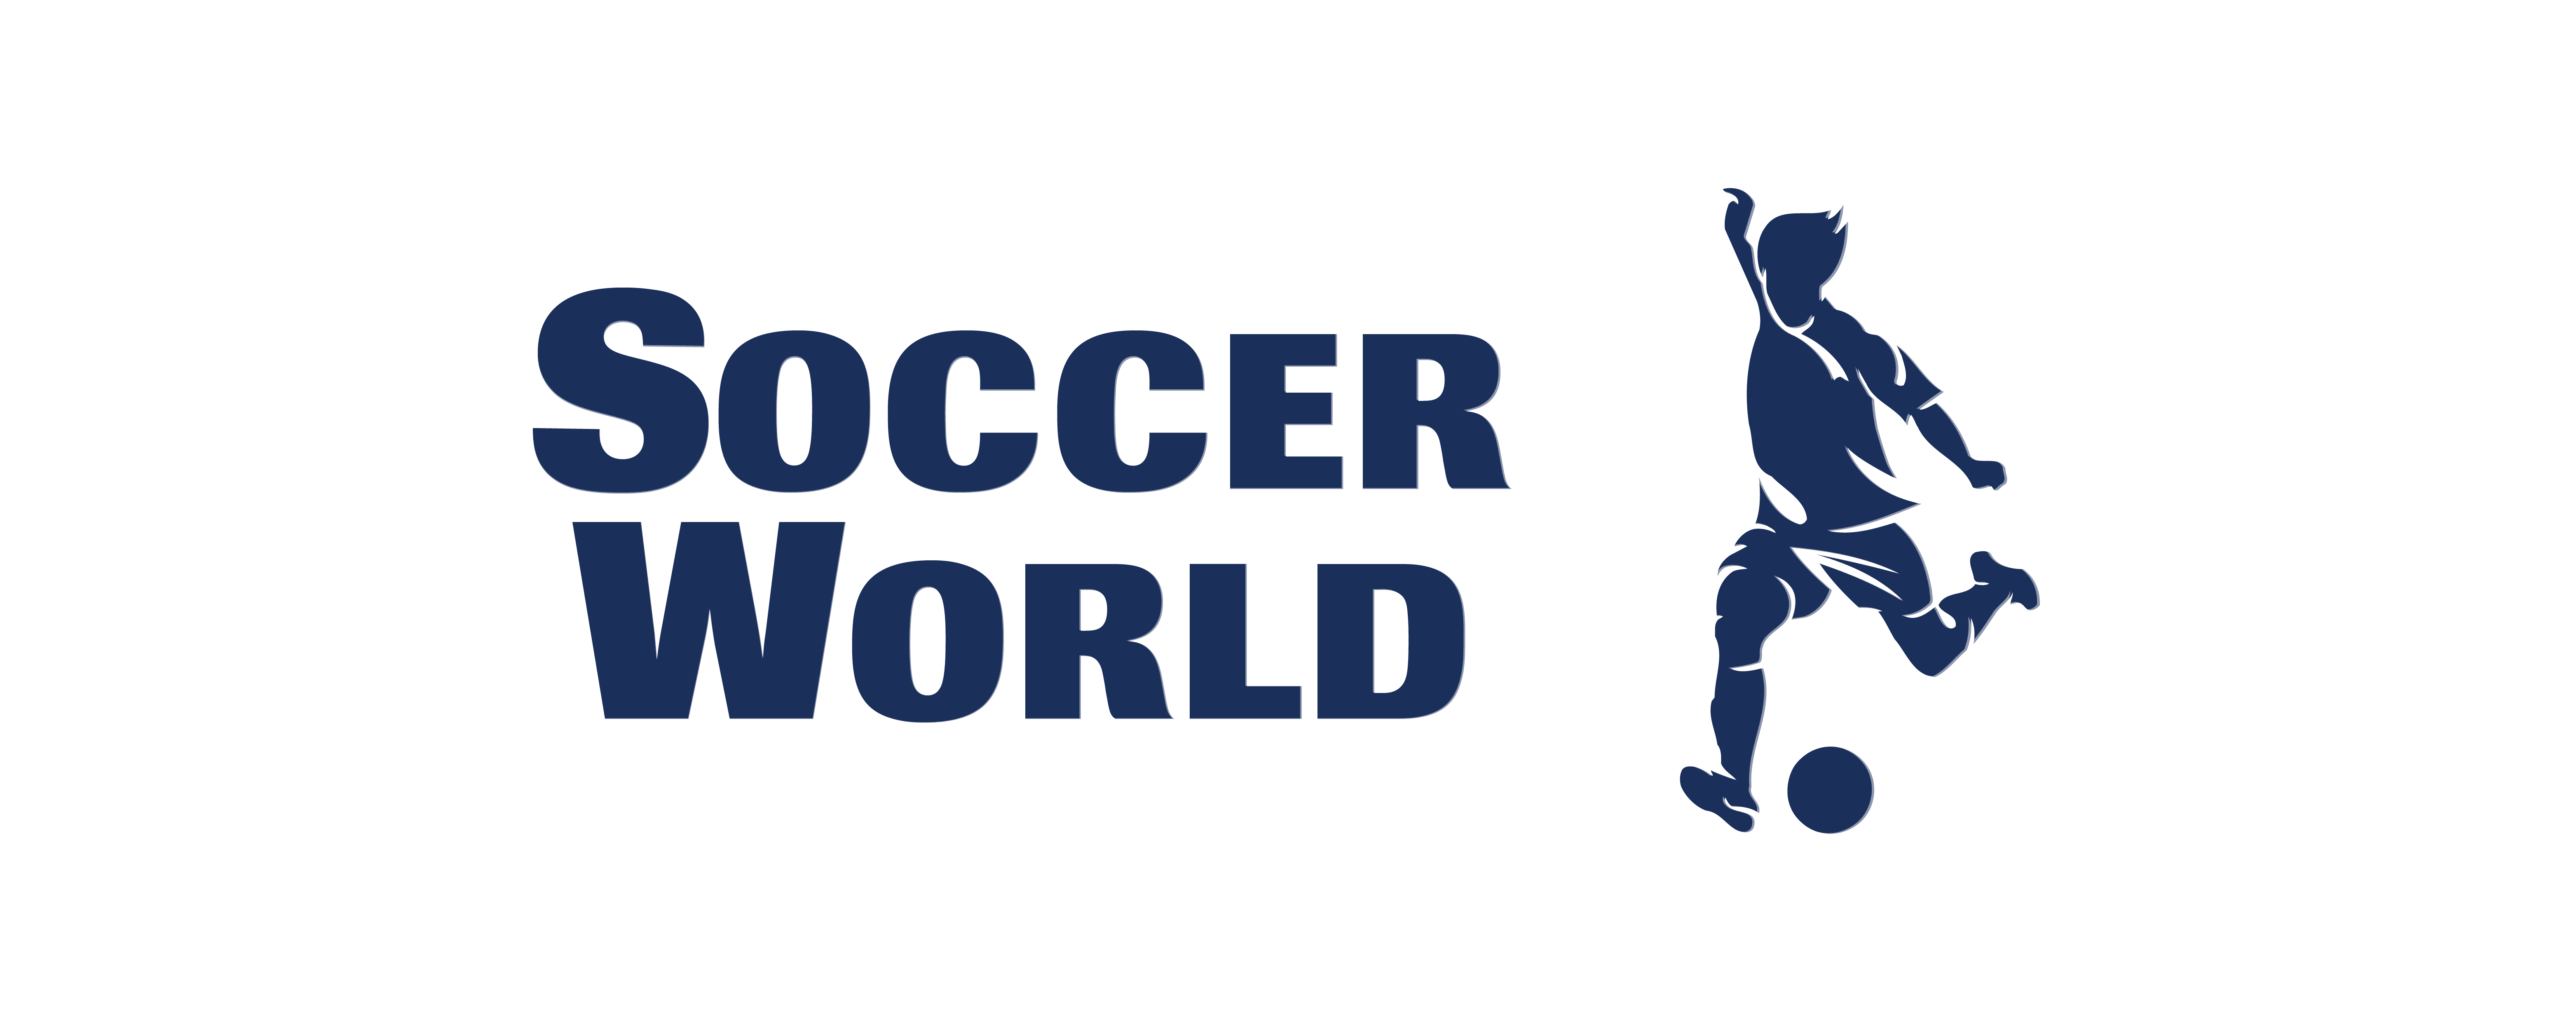 Soccer World Logo (Transparent background)